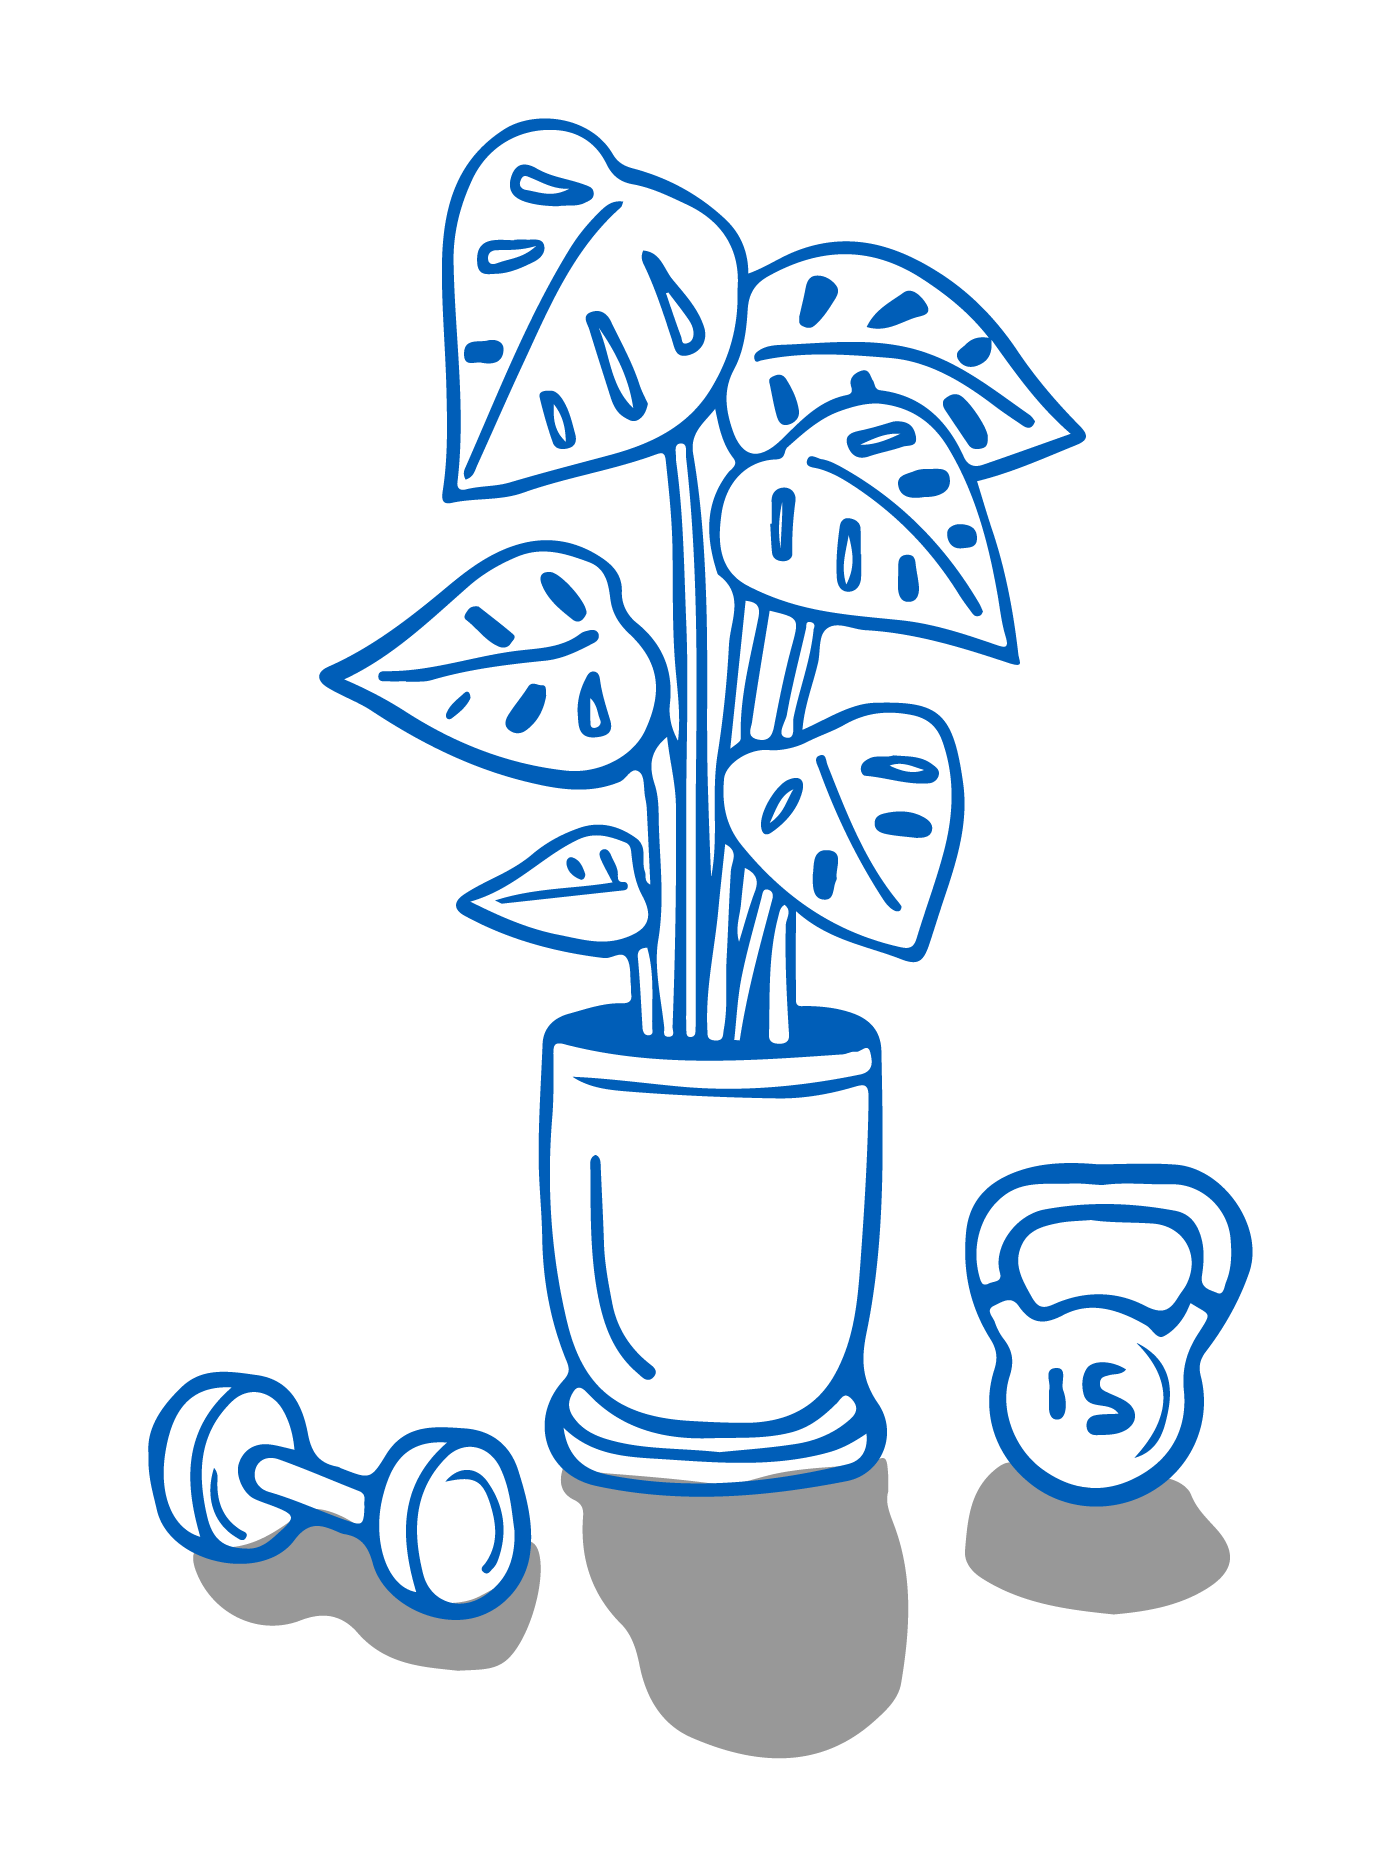 Une plante d’intérieur est posée sur le sol entre un haltère et un haltère russe.